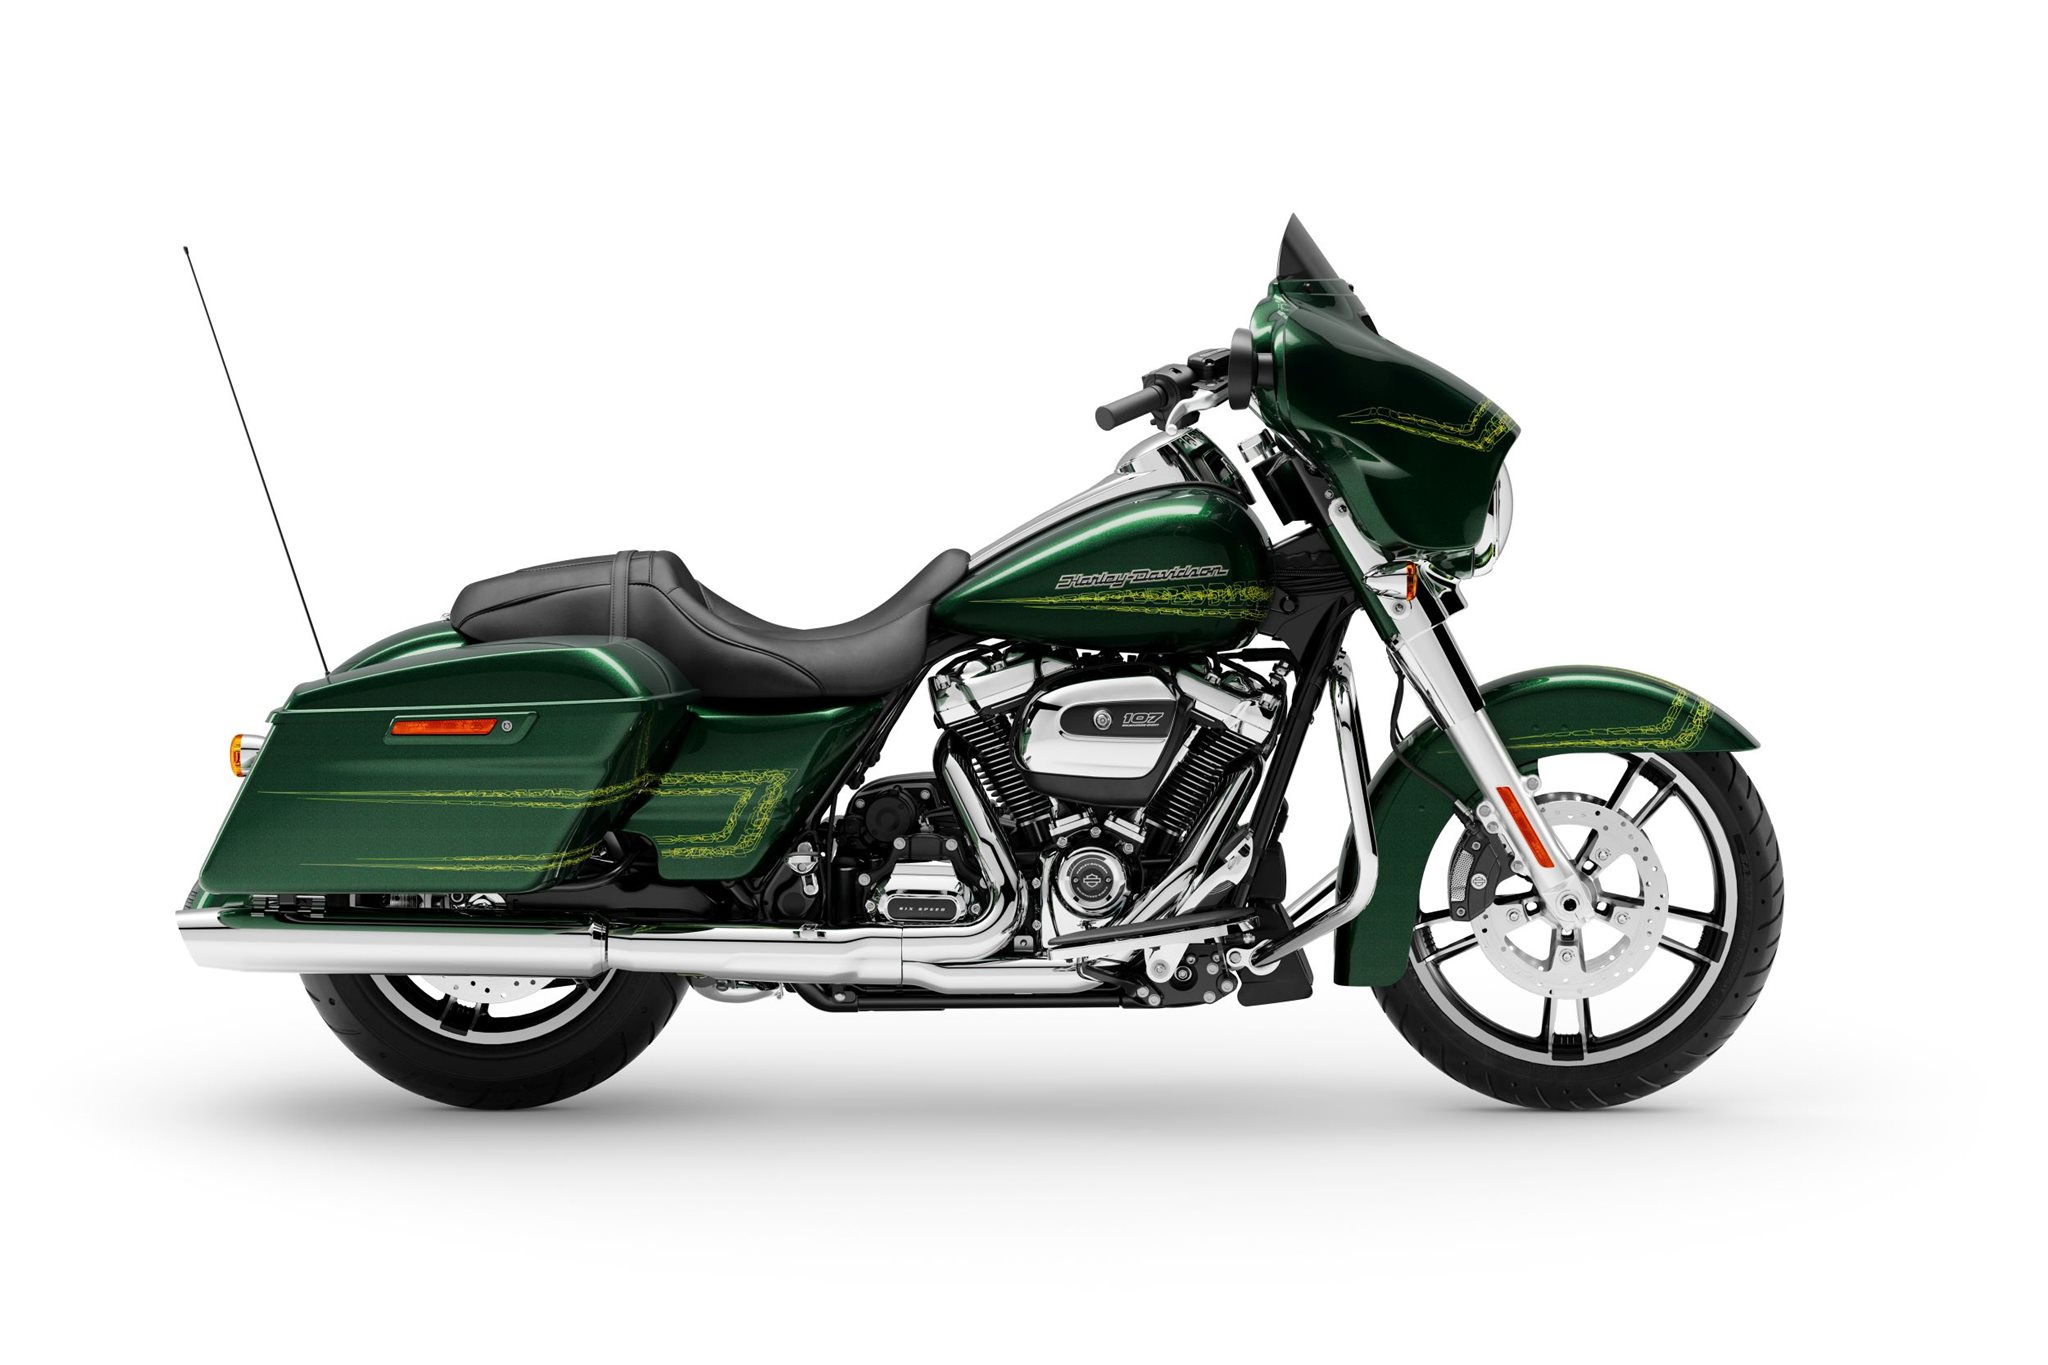 Motorrad Vergleich Harley Davidson Street Glide Flhx 2019 Vs Indian Chieftain Dark Horse 2019